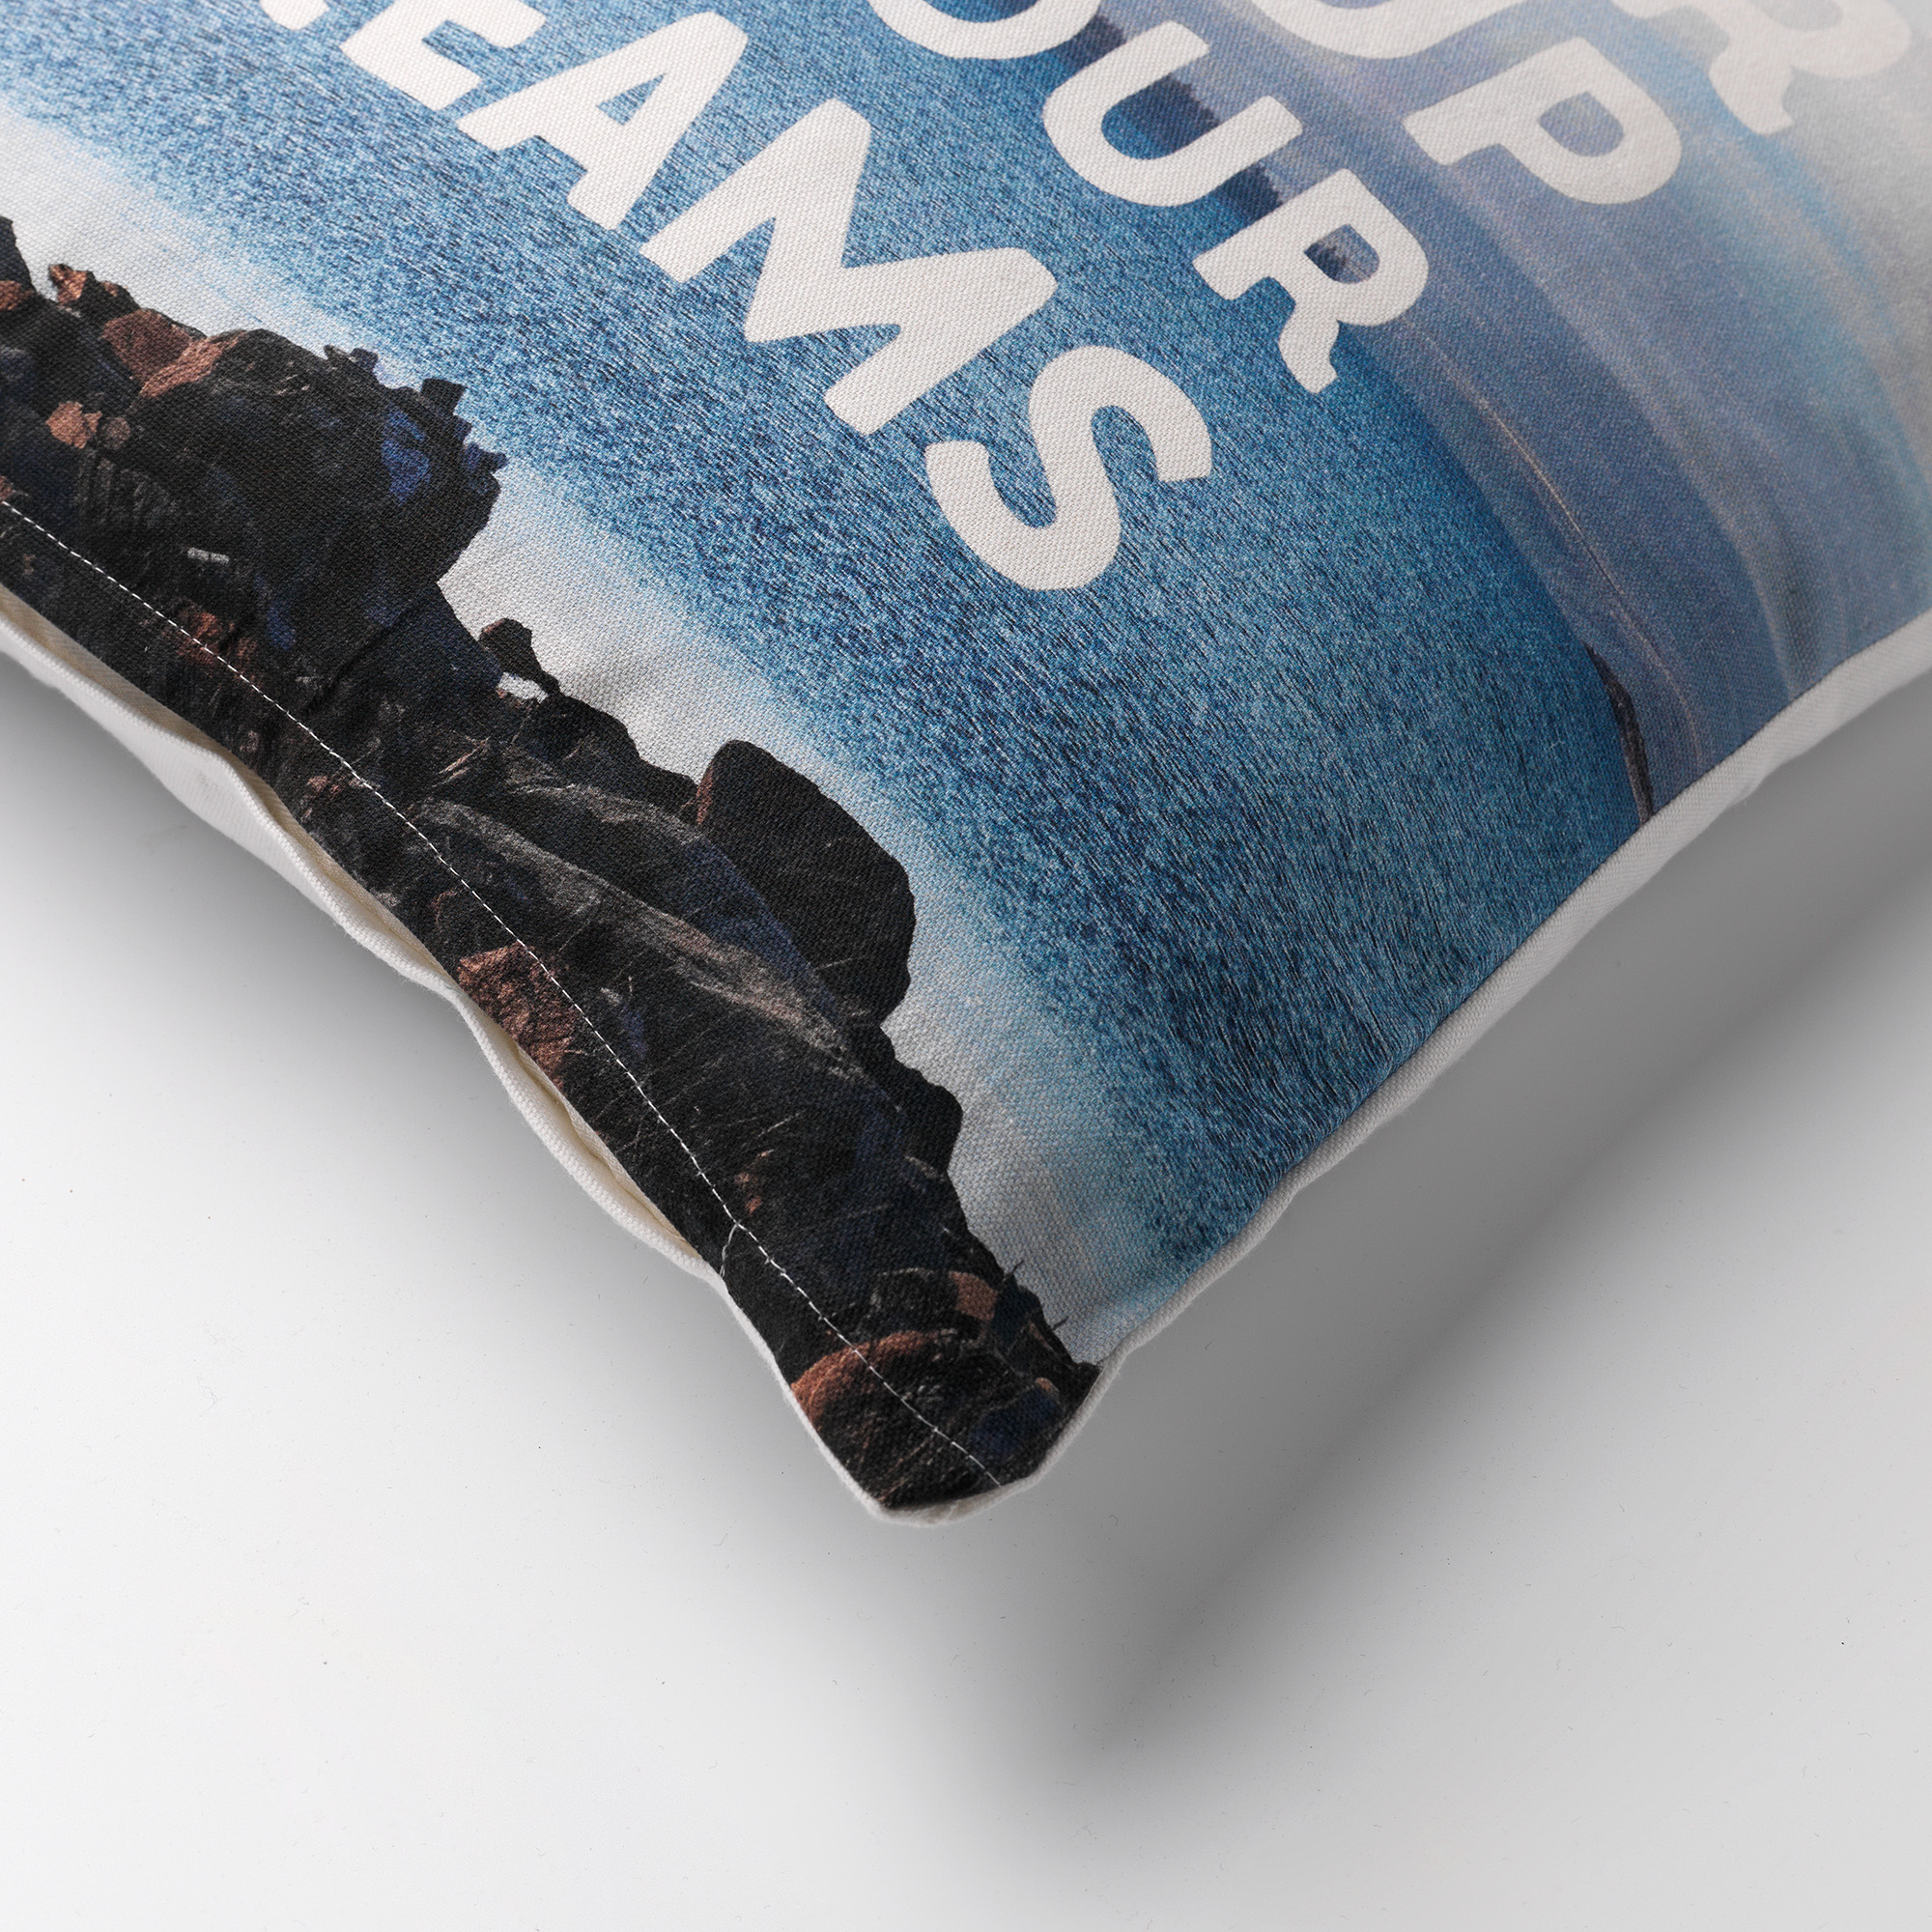 DREAMS - Kussenhoes 45x45 cm - 100% katoen - met tekst - blauw